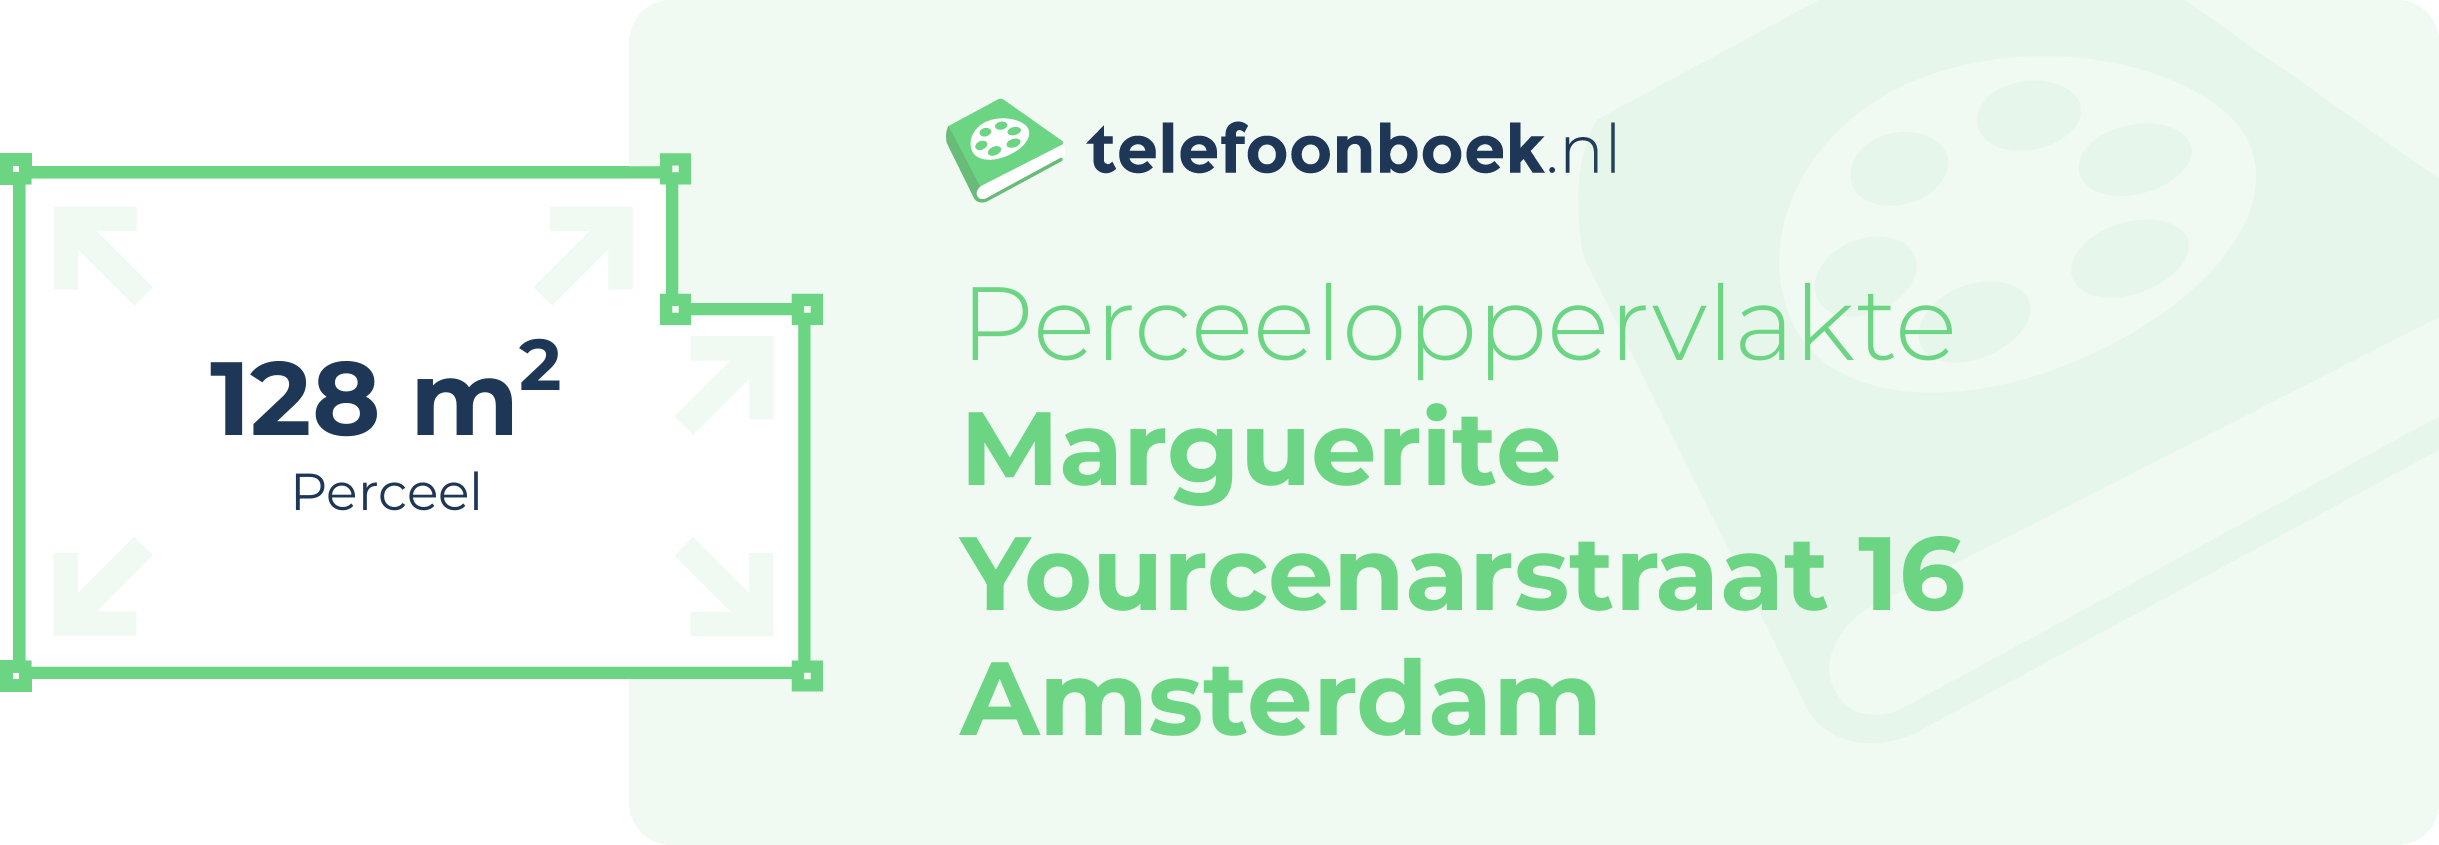 Perceeloppervlakte Marguerite Yourcenarstraat 16 Amsterdam